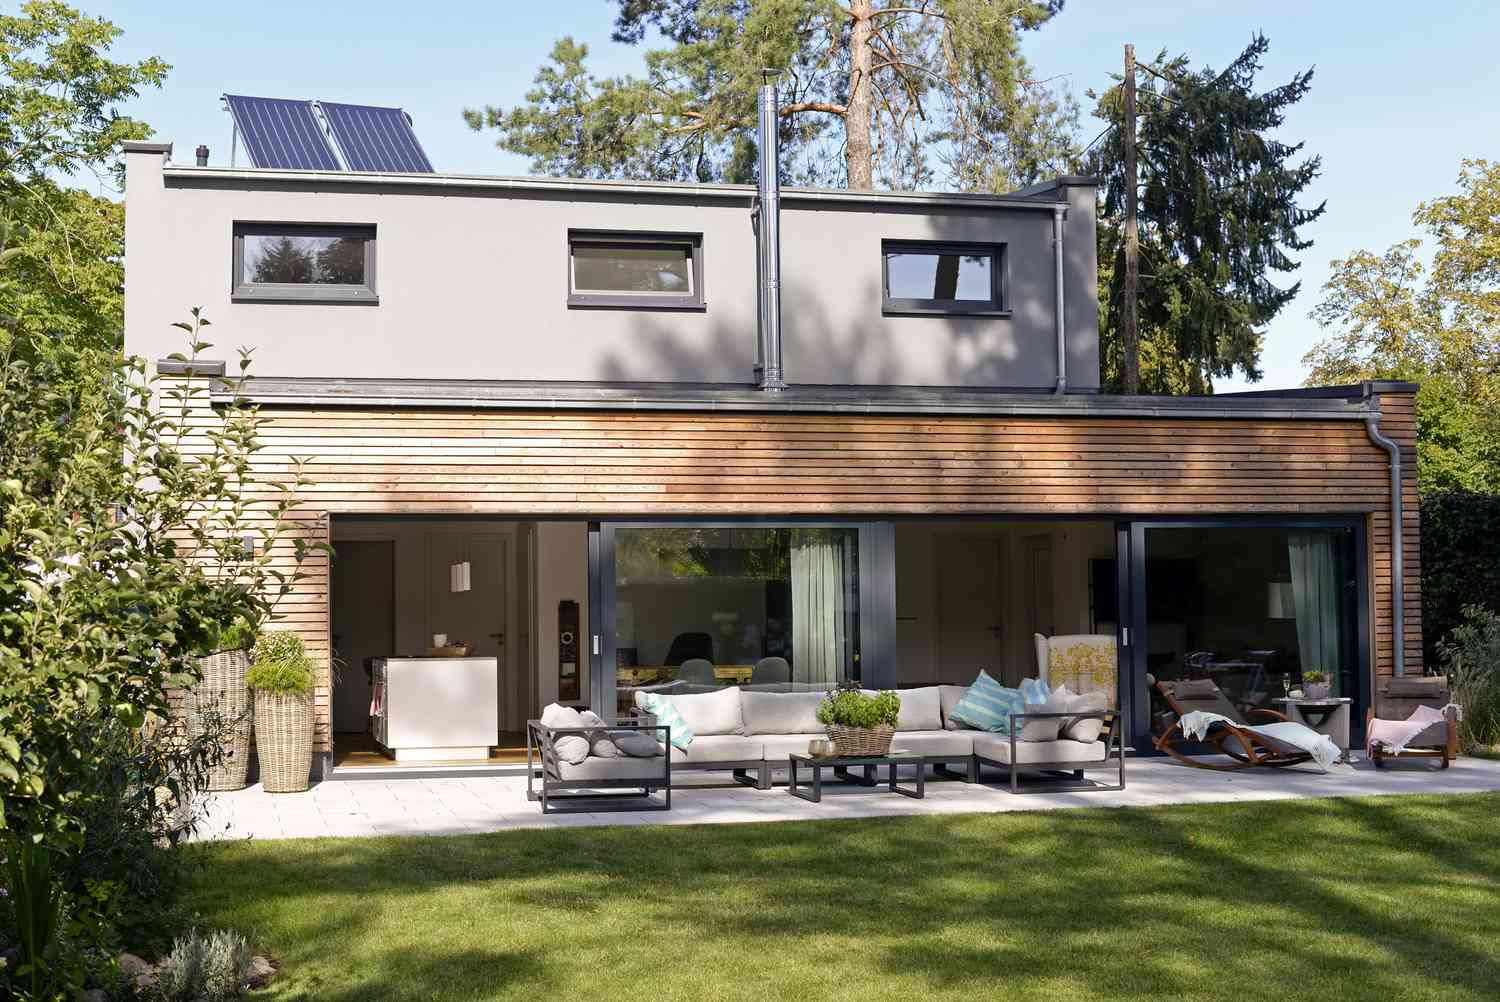 casa com painéis solares no telhado